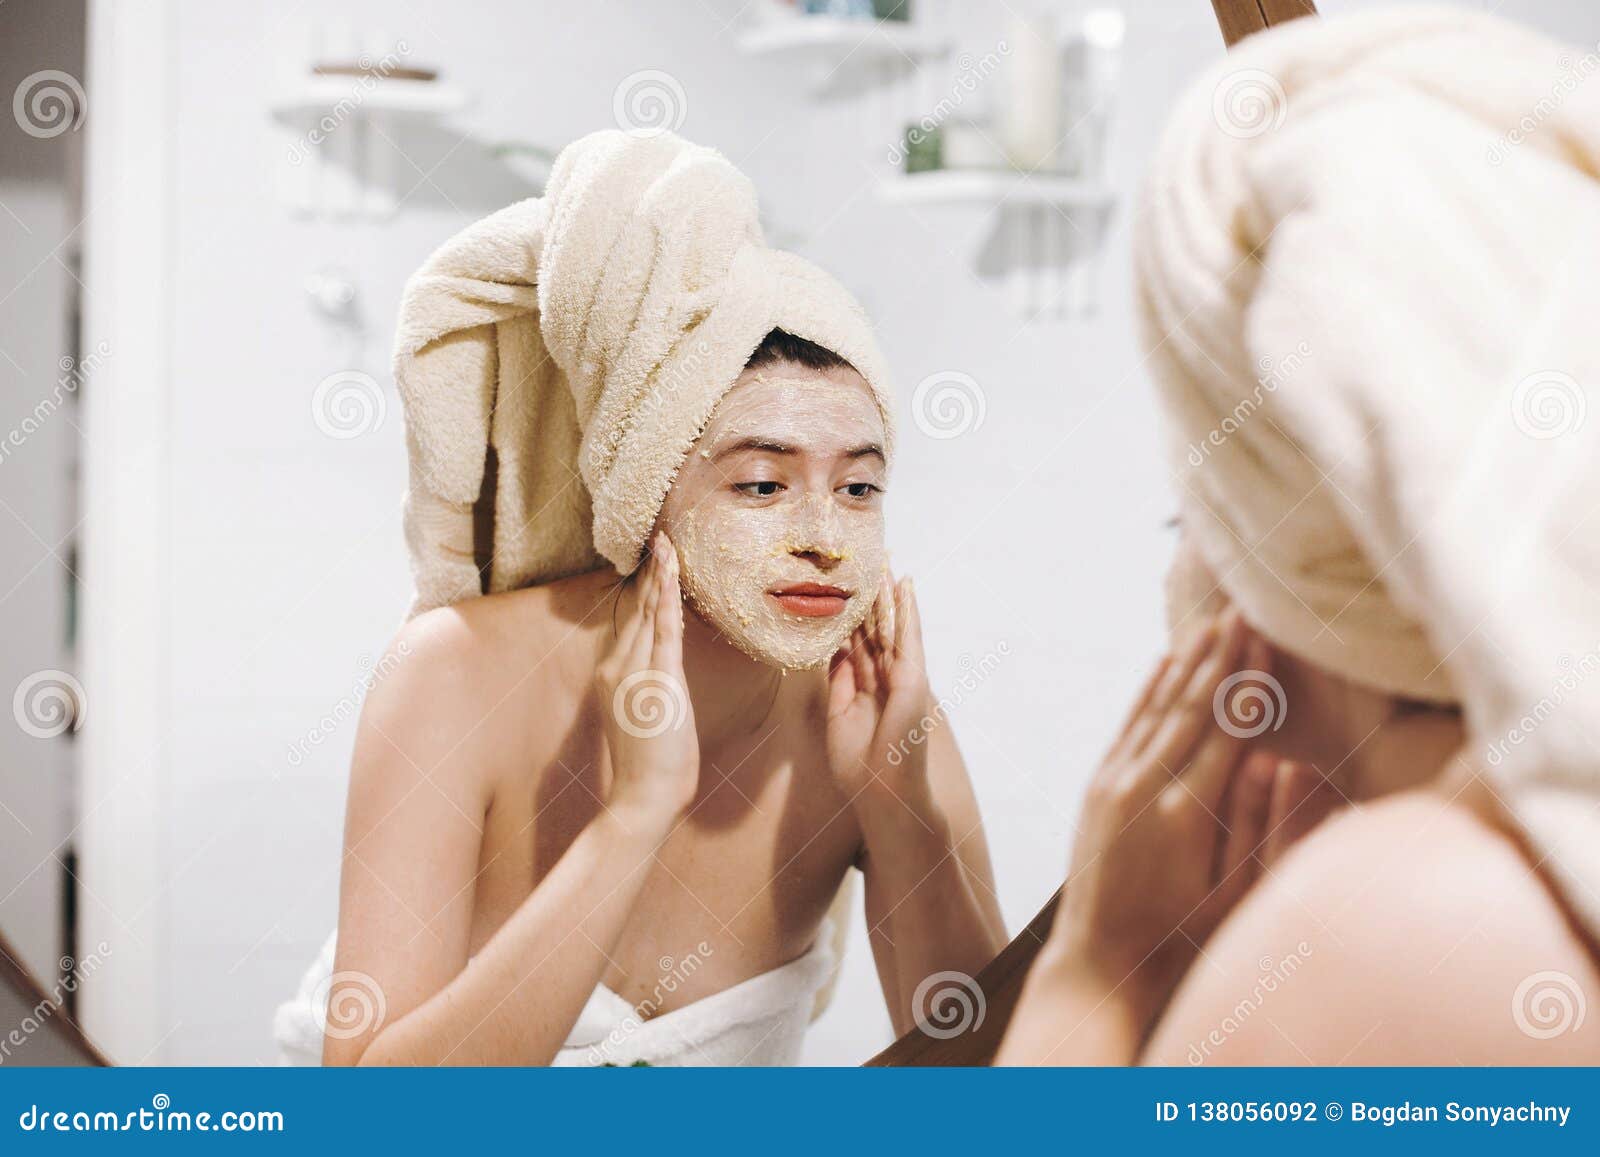 Чего делают после ванны. Маска для лица женщина с полотенцем. Девушка с маской на лице перед зеркалом. Очищение кожи лица перед зеркалом. Девушка делает маску в ванной.